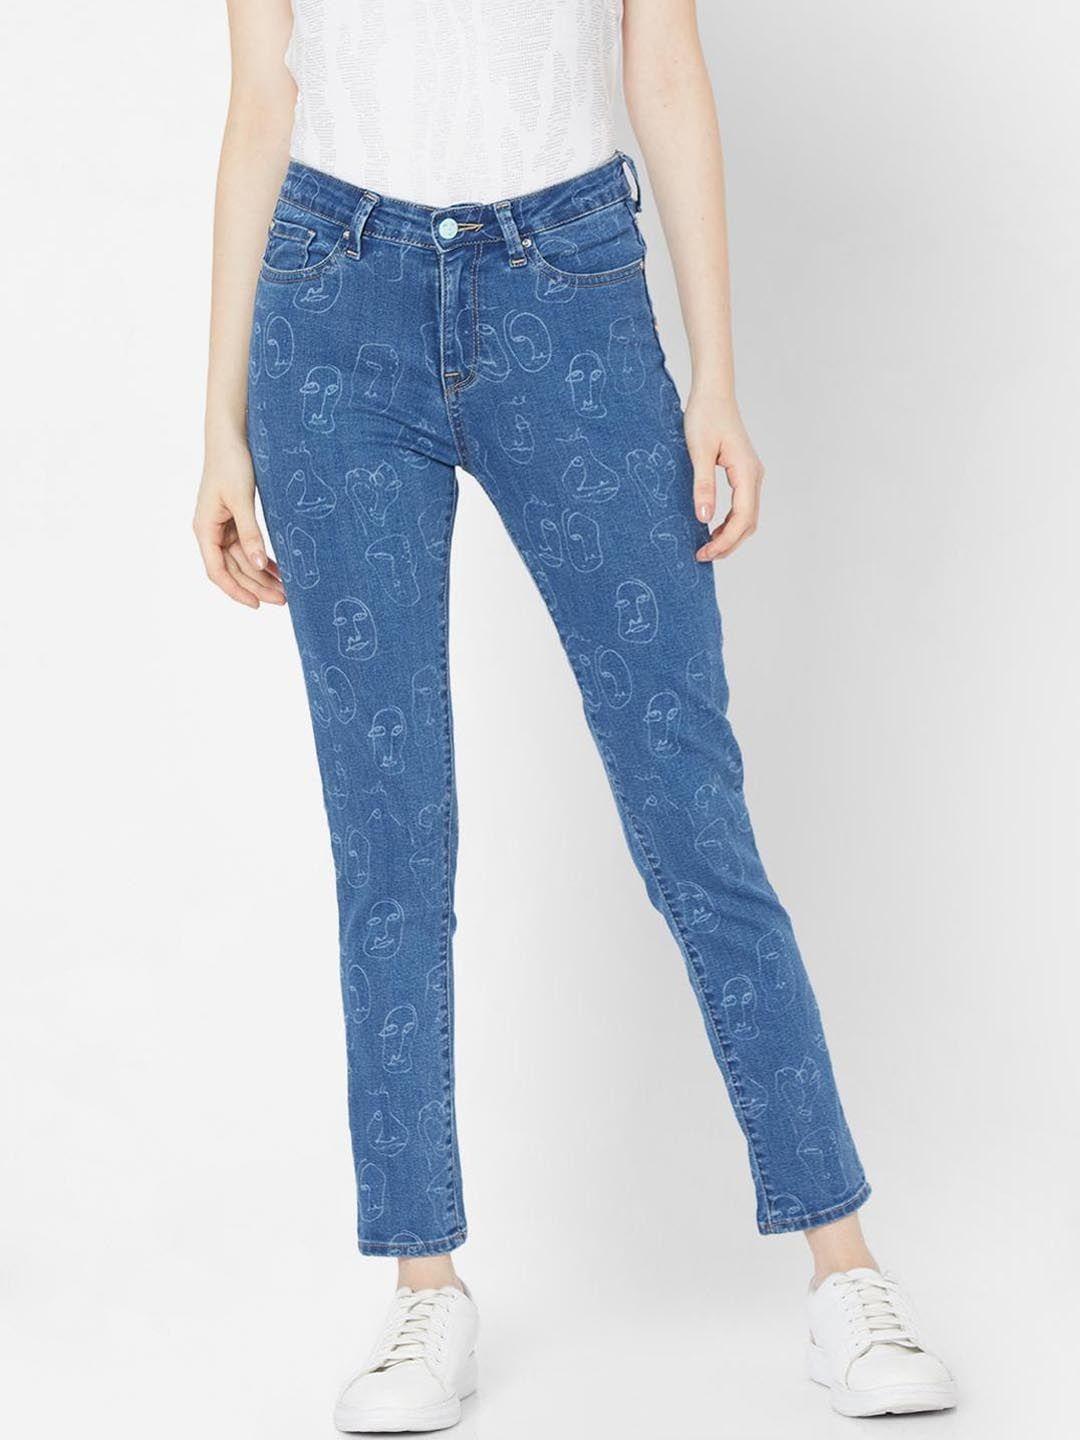 spykar-women-blue-skinny-fit-low-distress-light-fade-jeans